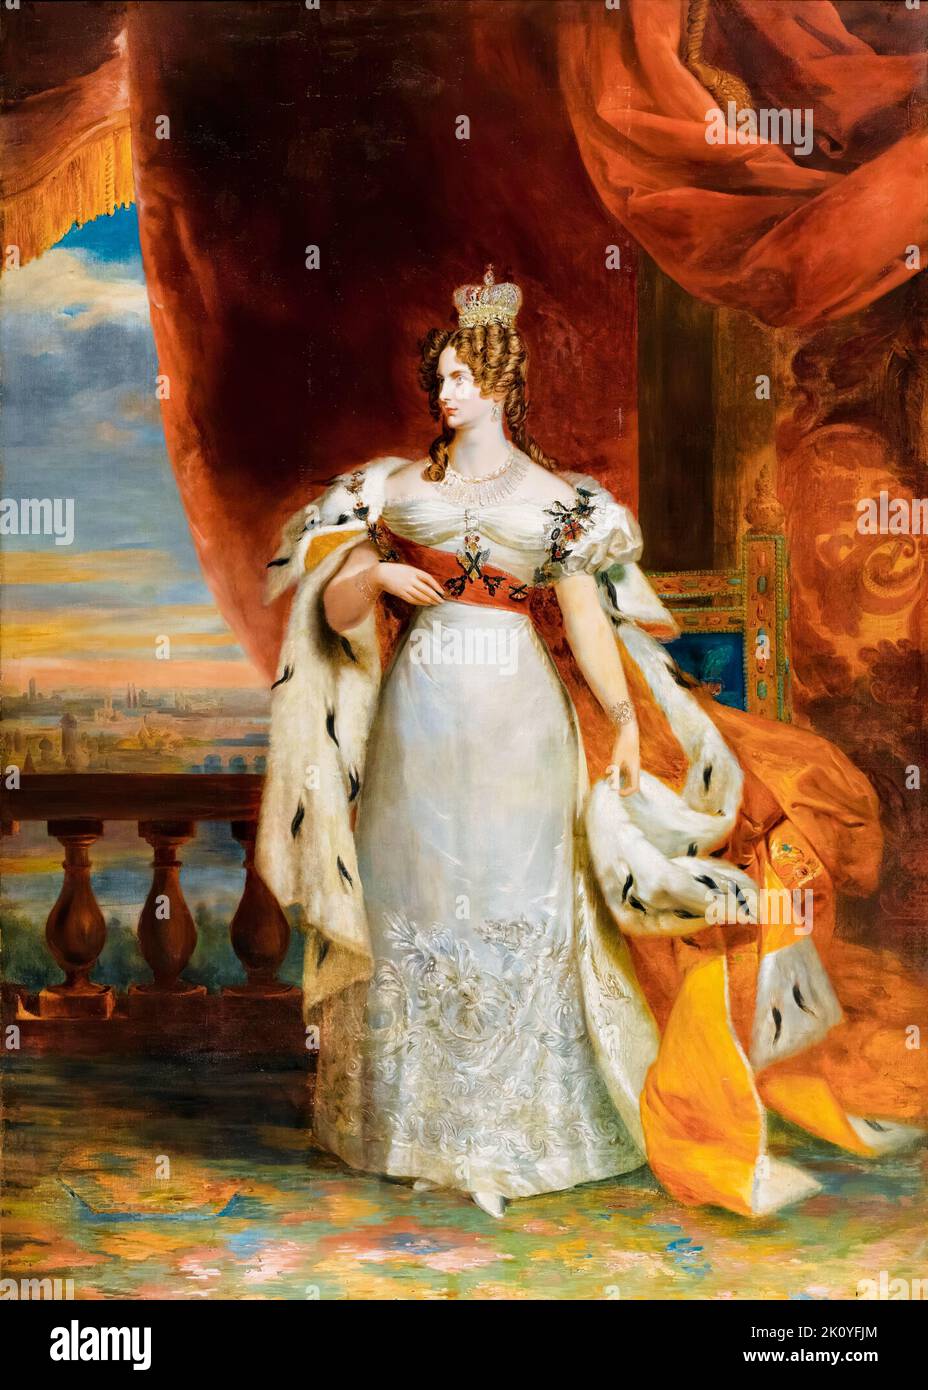 Alexandra Feodorovna Nacida Princesa Charlotte de Prusia (1798-1860), Emperatriz de Rusia como esposa del Emperador Nicolás I (r. 1825-1855), retrato pintado al óleo sobre lienzo por Studio de George Dawe, antes de 1829 Foto de stock